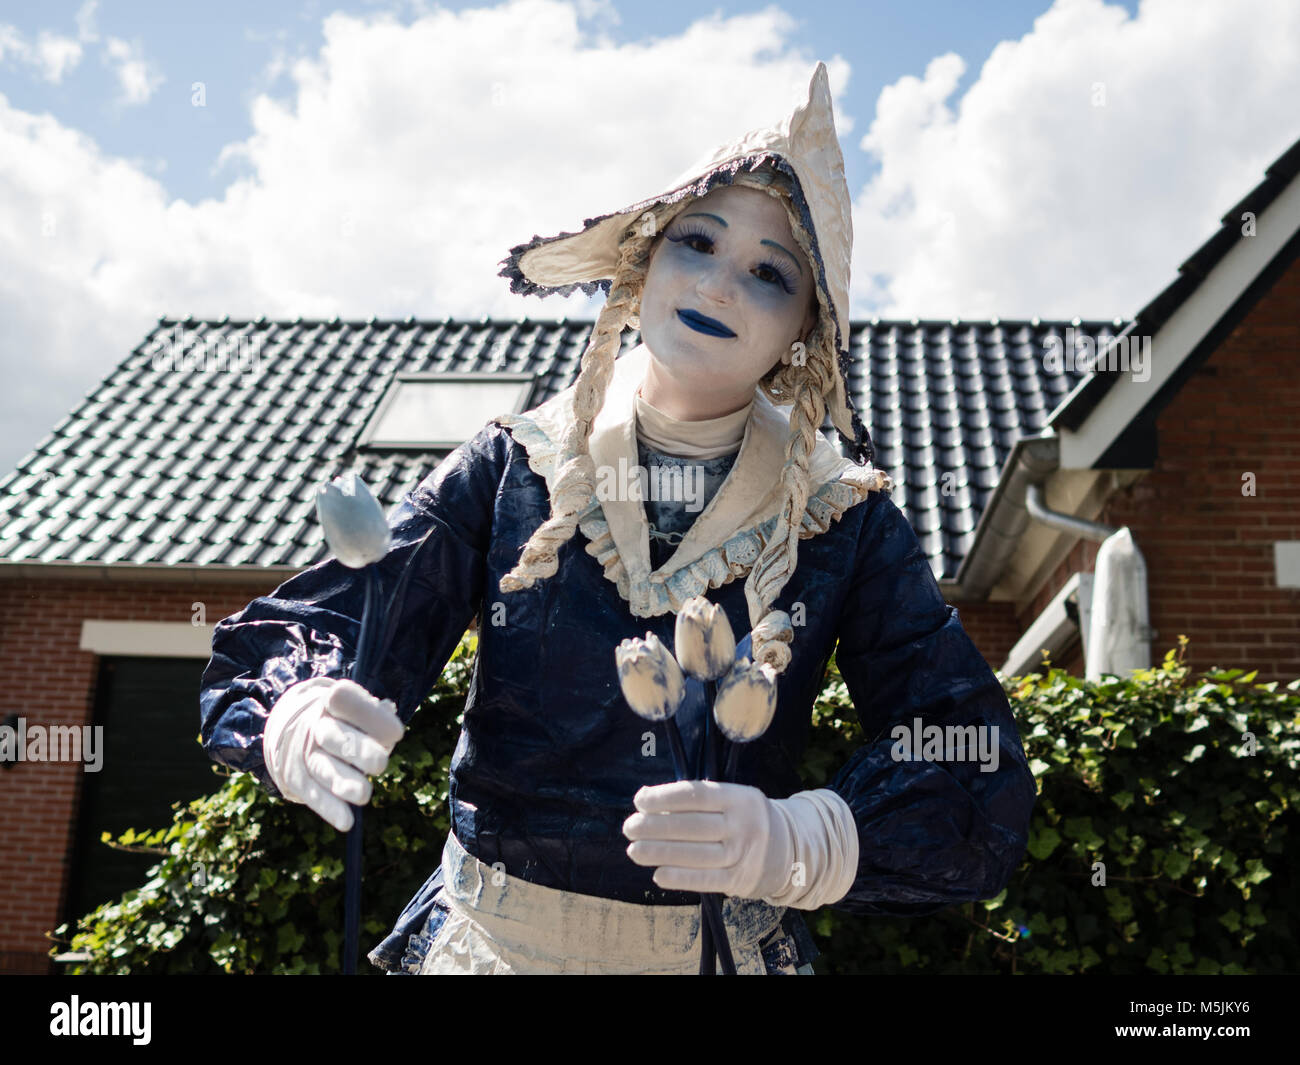 Le statue viventi Festival è stata celebrata nel villaggio olandese di roldo, nella provincia di Drenthe (Paesi Bassi). Il Festival contati con arou Foto Stock